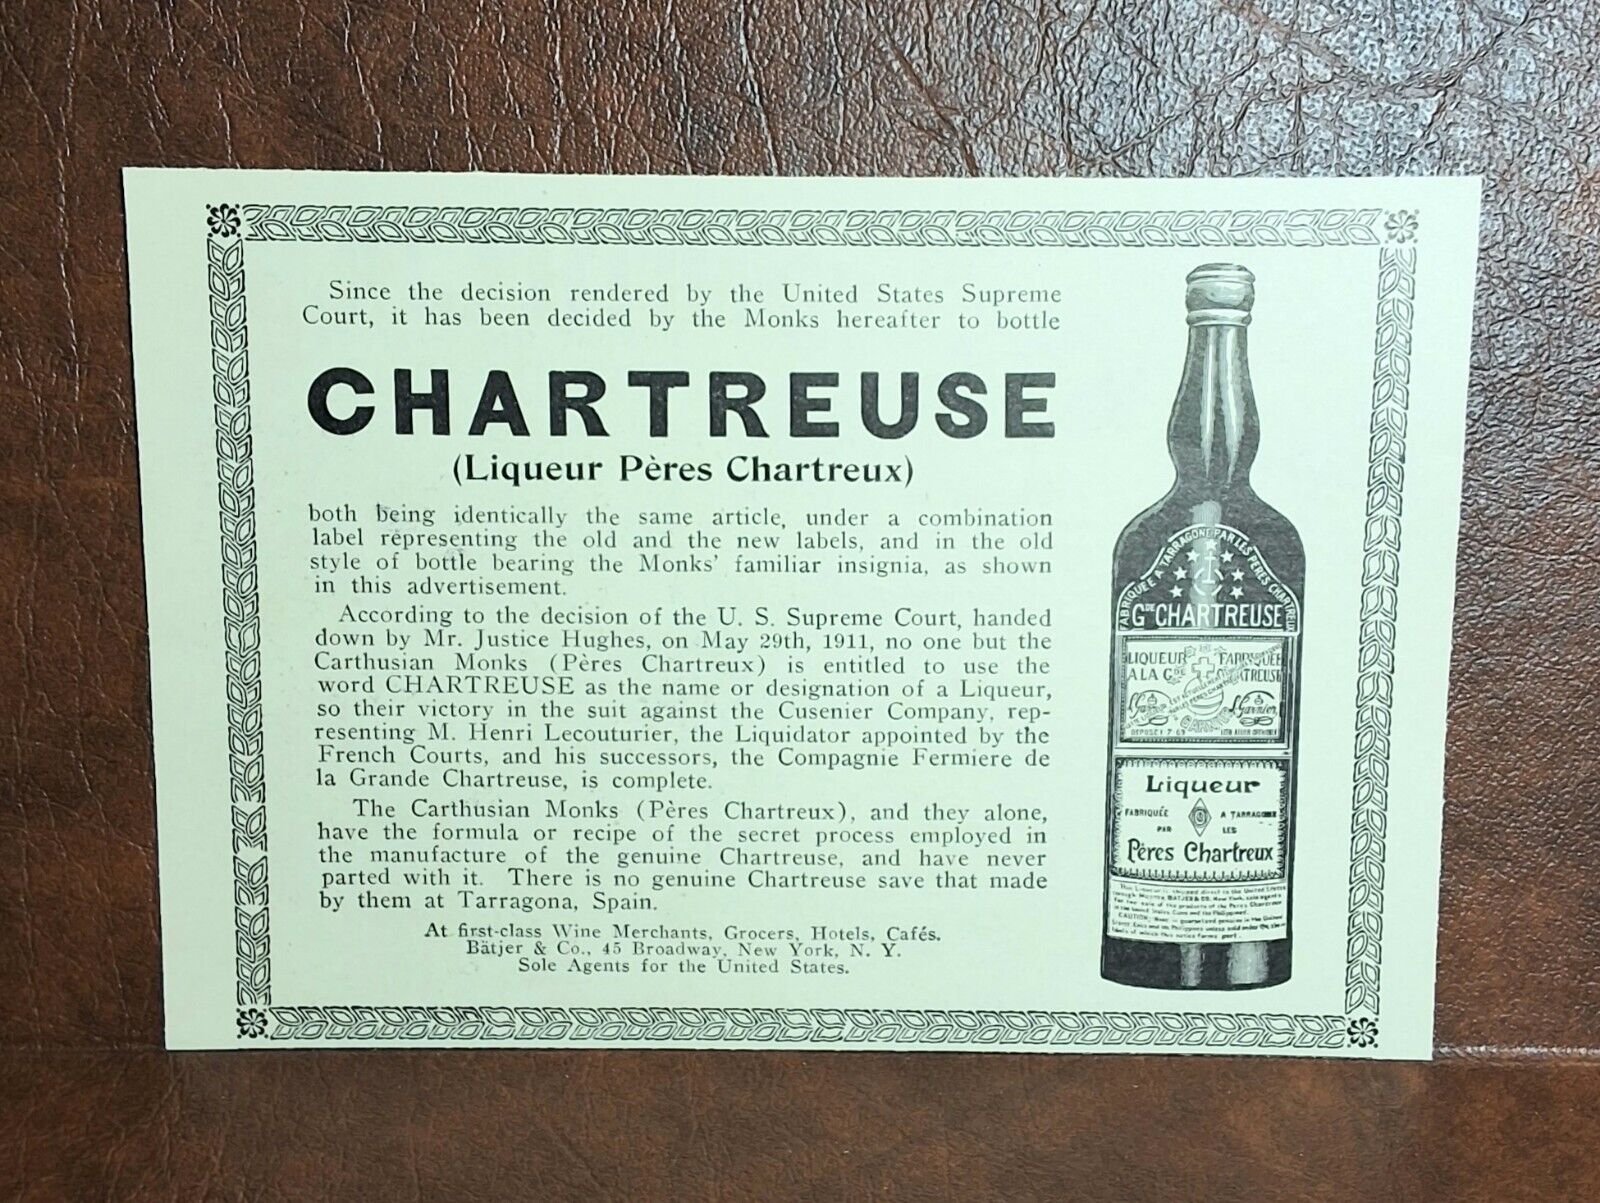 Antique Old Vintage Liqueur Alcohol Bottle - CHARTREUSE - 1912 Print Art AD